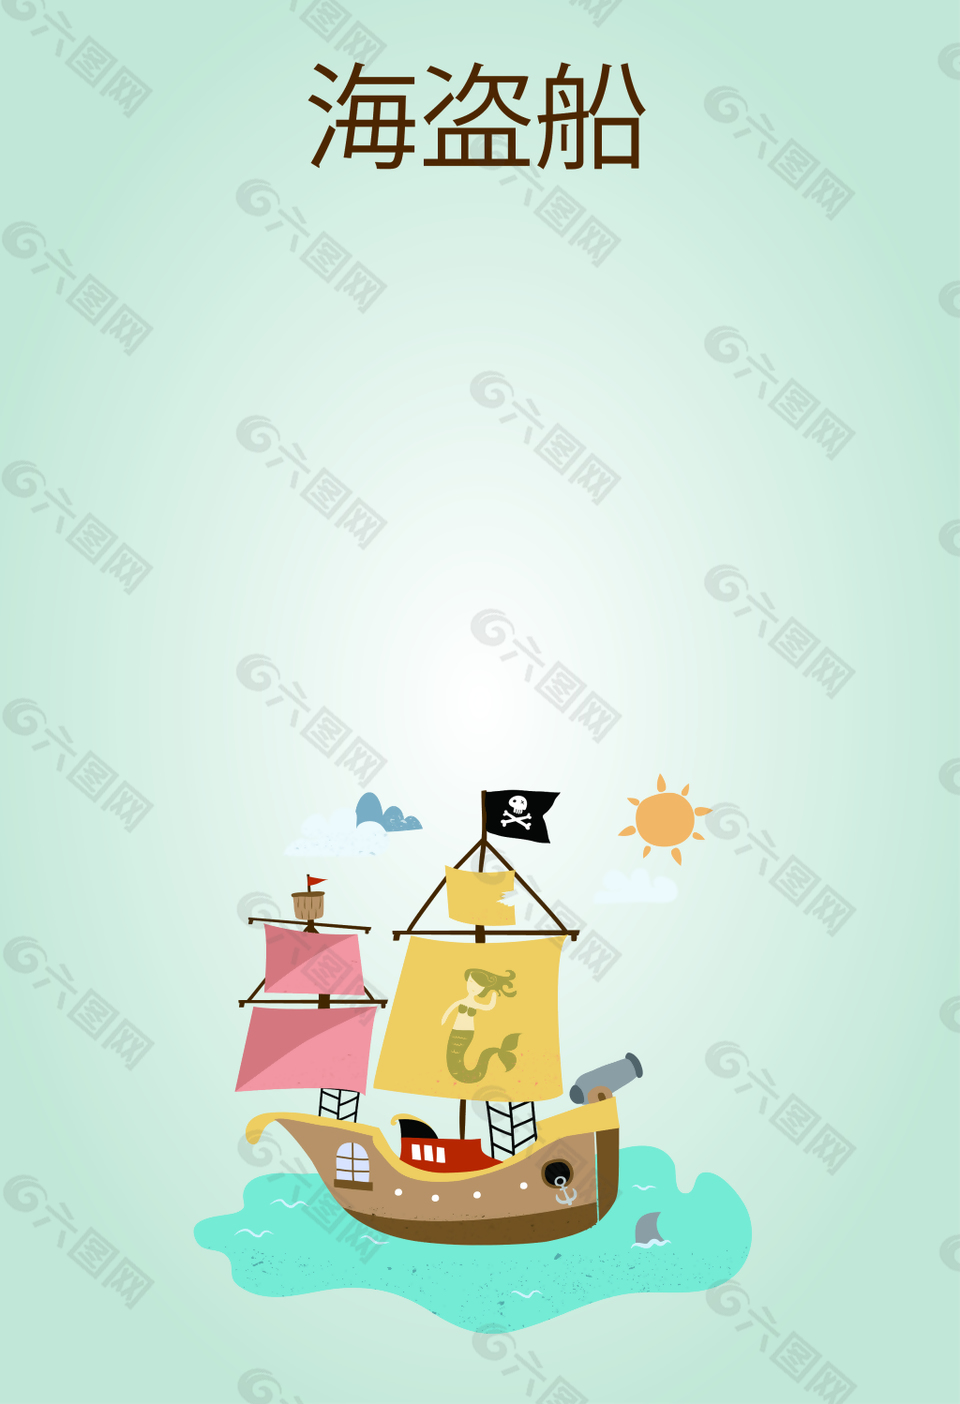 卡通海盗船形象海报背景素材